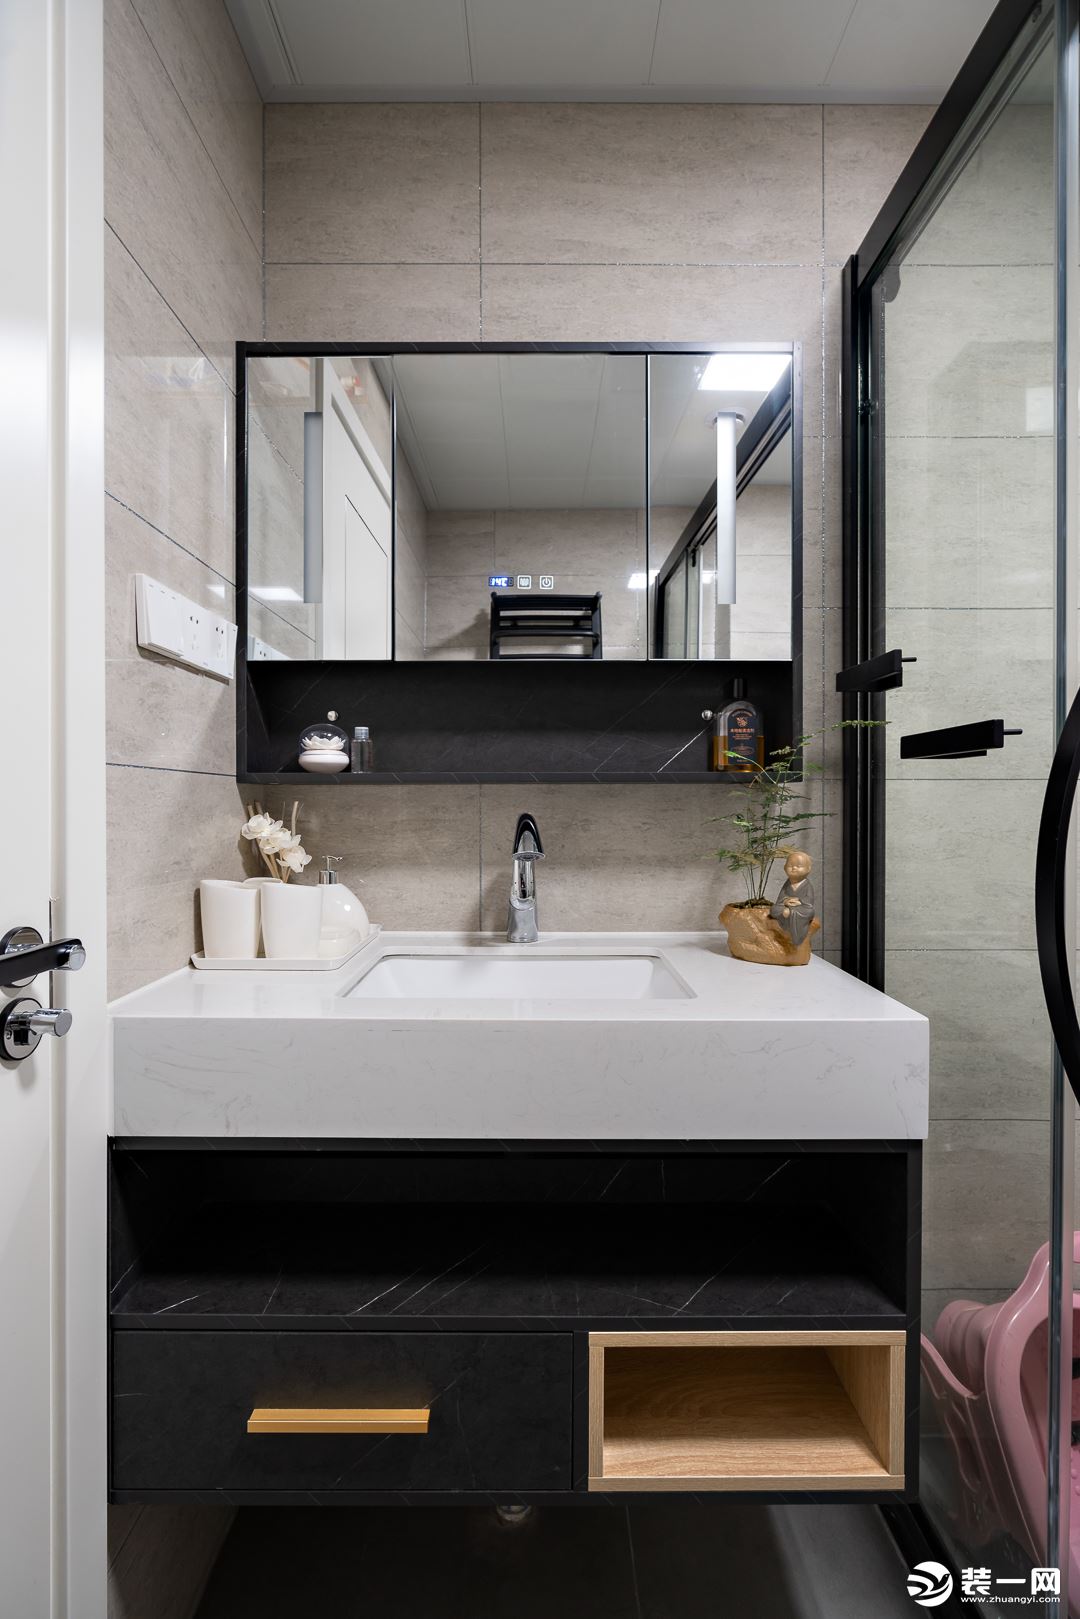  卫浴空间以黑白灰为主调，突显了空间的简洁大气，盥洗镜与玻璃淋浴房均以黑色金属线条包边，视觉上更加整